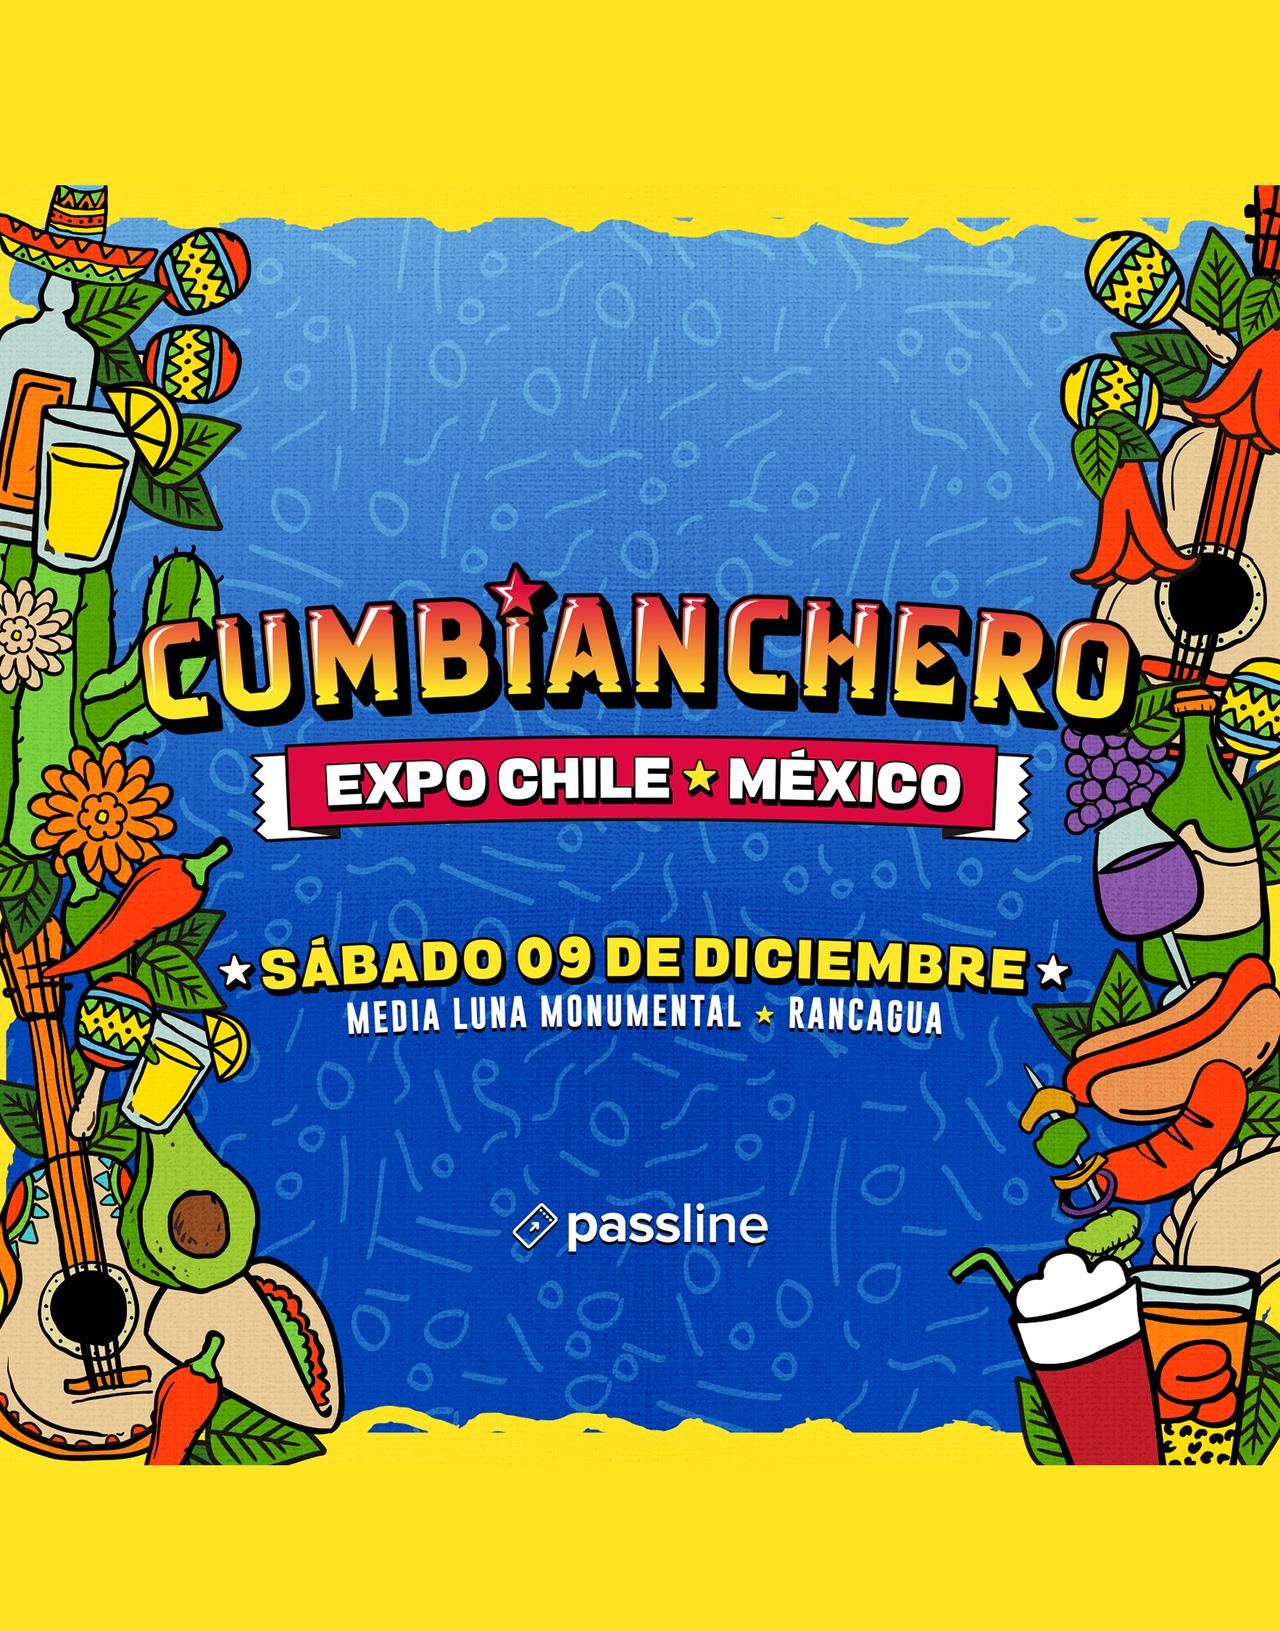 Expo Cumbianchero - Santaferia, Luis Lambis y más